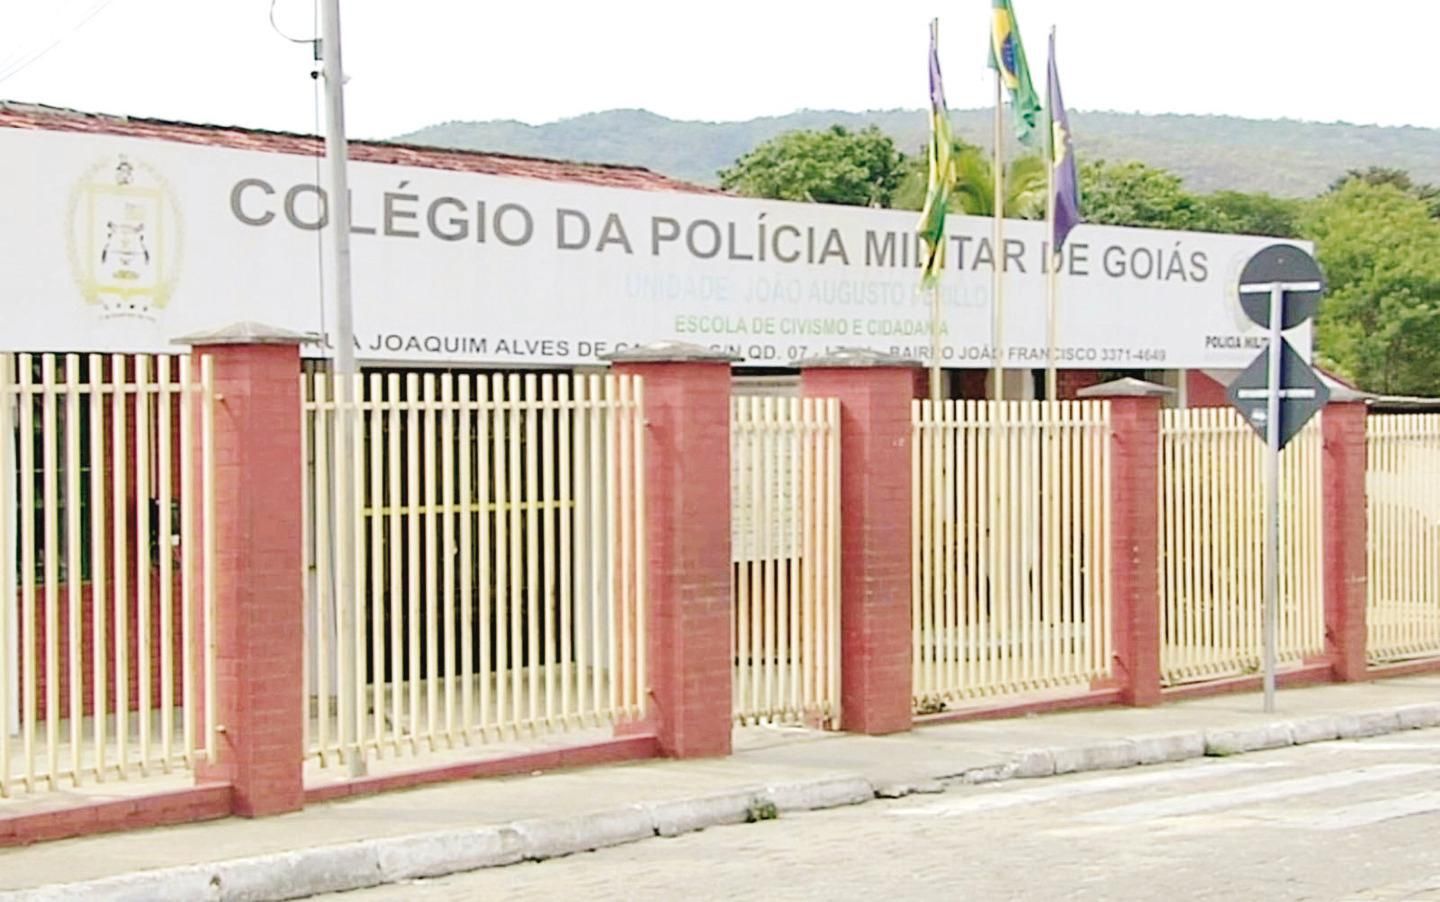 Exército alterou status militar de Bolsonaro para viabilizar matrícula da  filha em colégio - PontoPoder - Diário do Nordeste